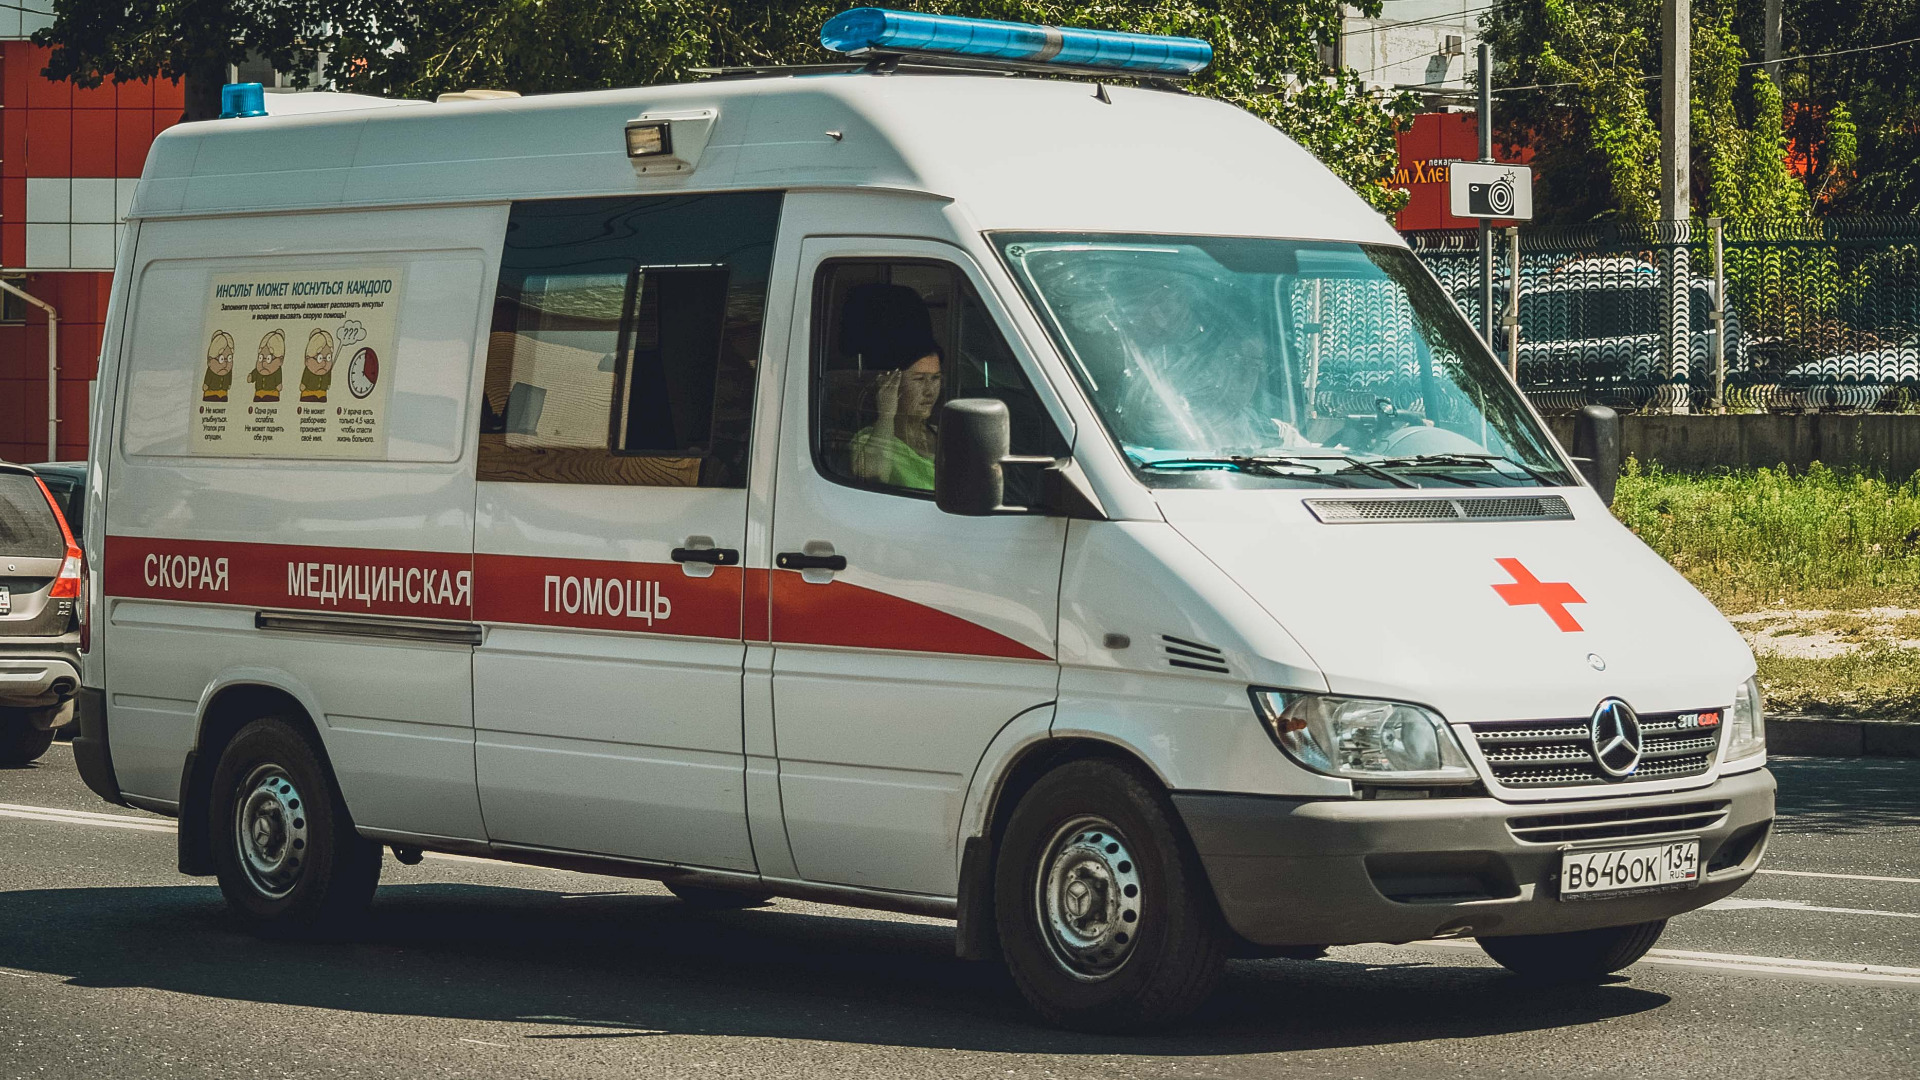 Гадюки напали на двух детей в Волгоградской области